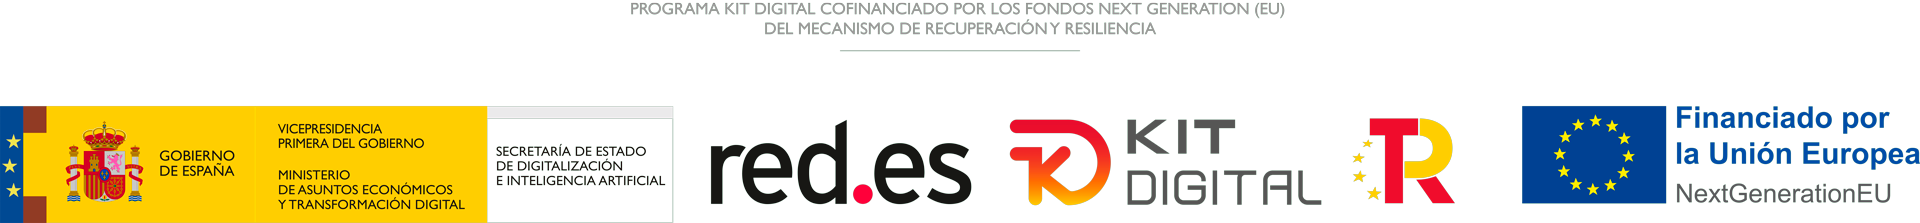 Programa Kit Digital cofinanciado por los fondos Next Generation (EU) del mecanismo de recuperación y resilencia